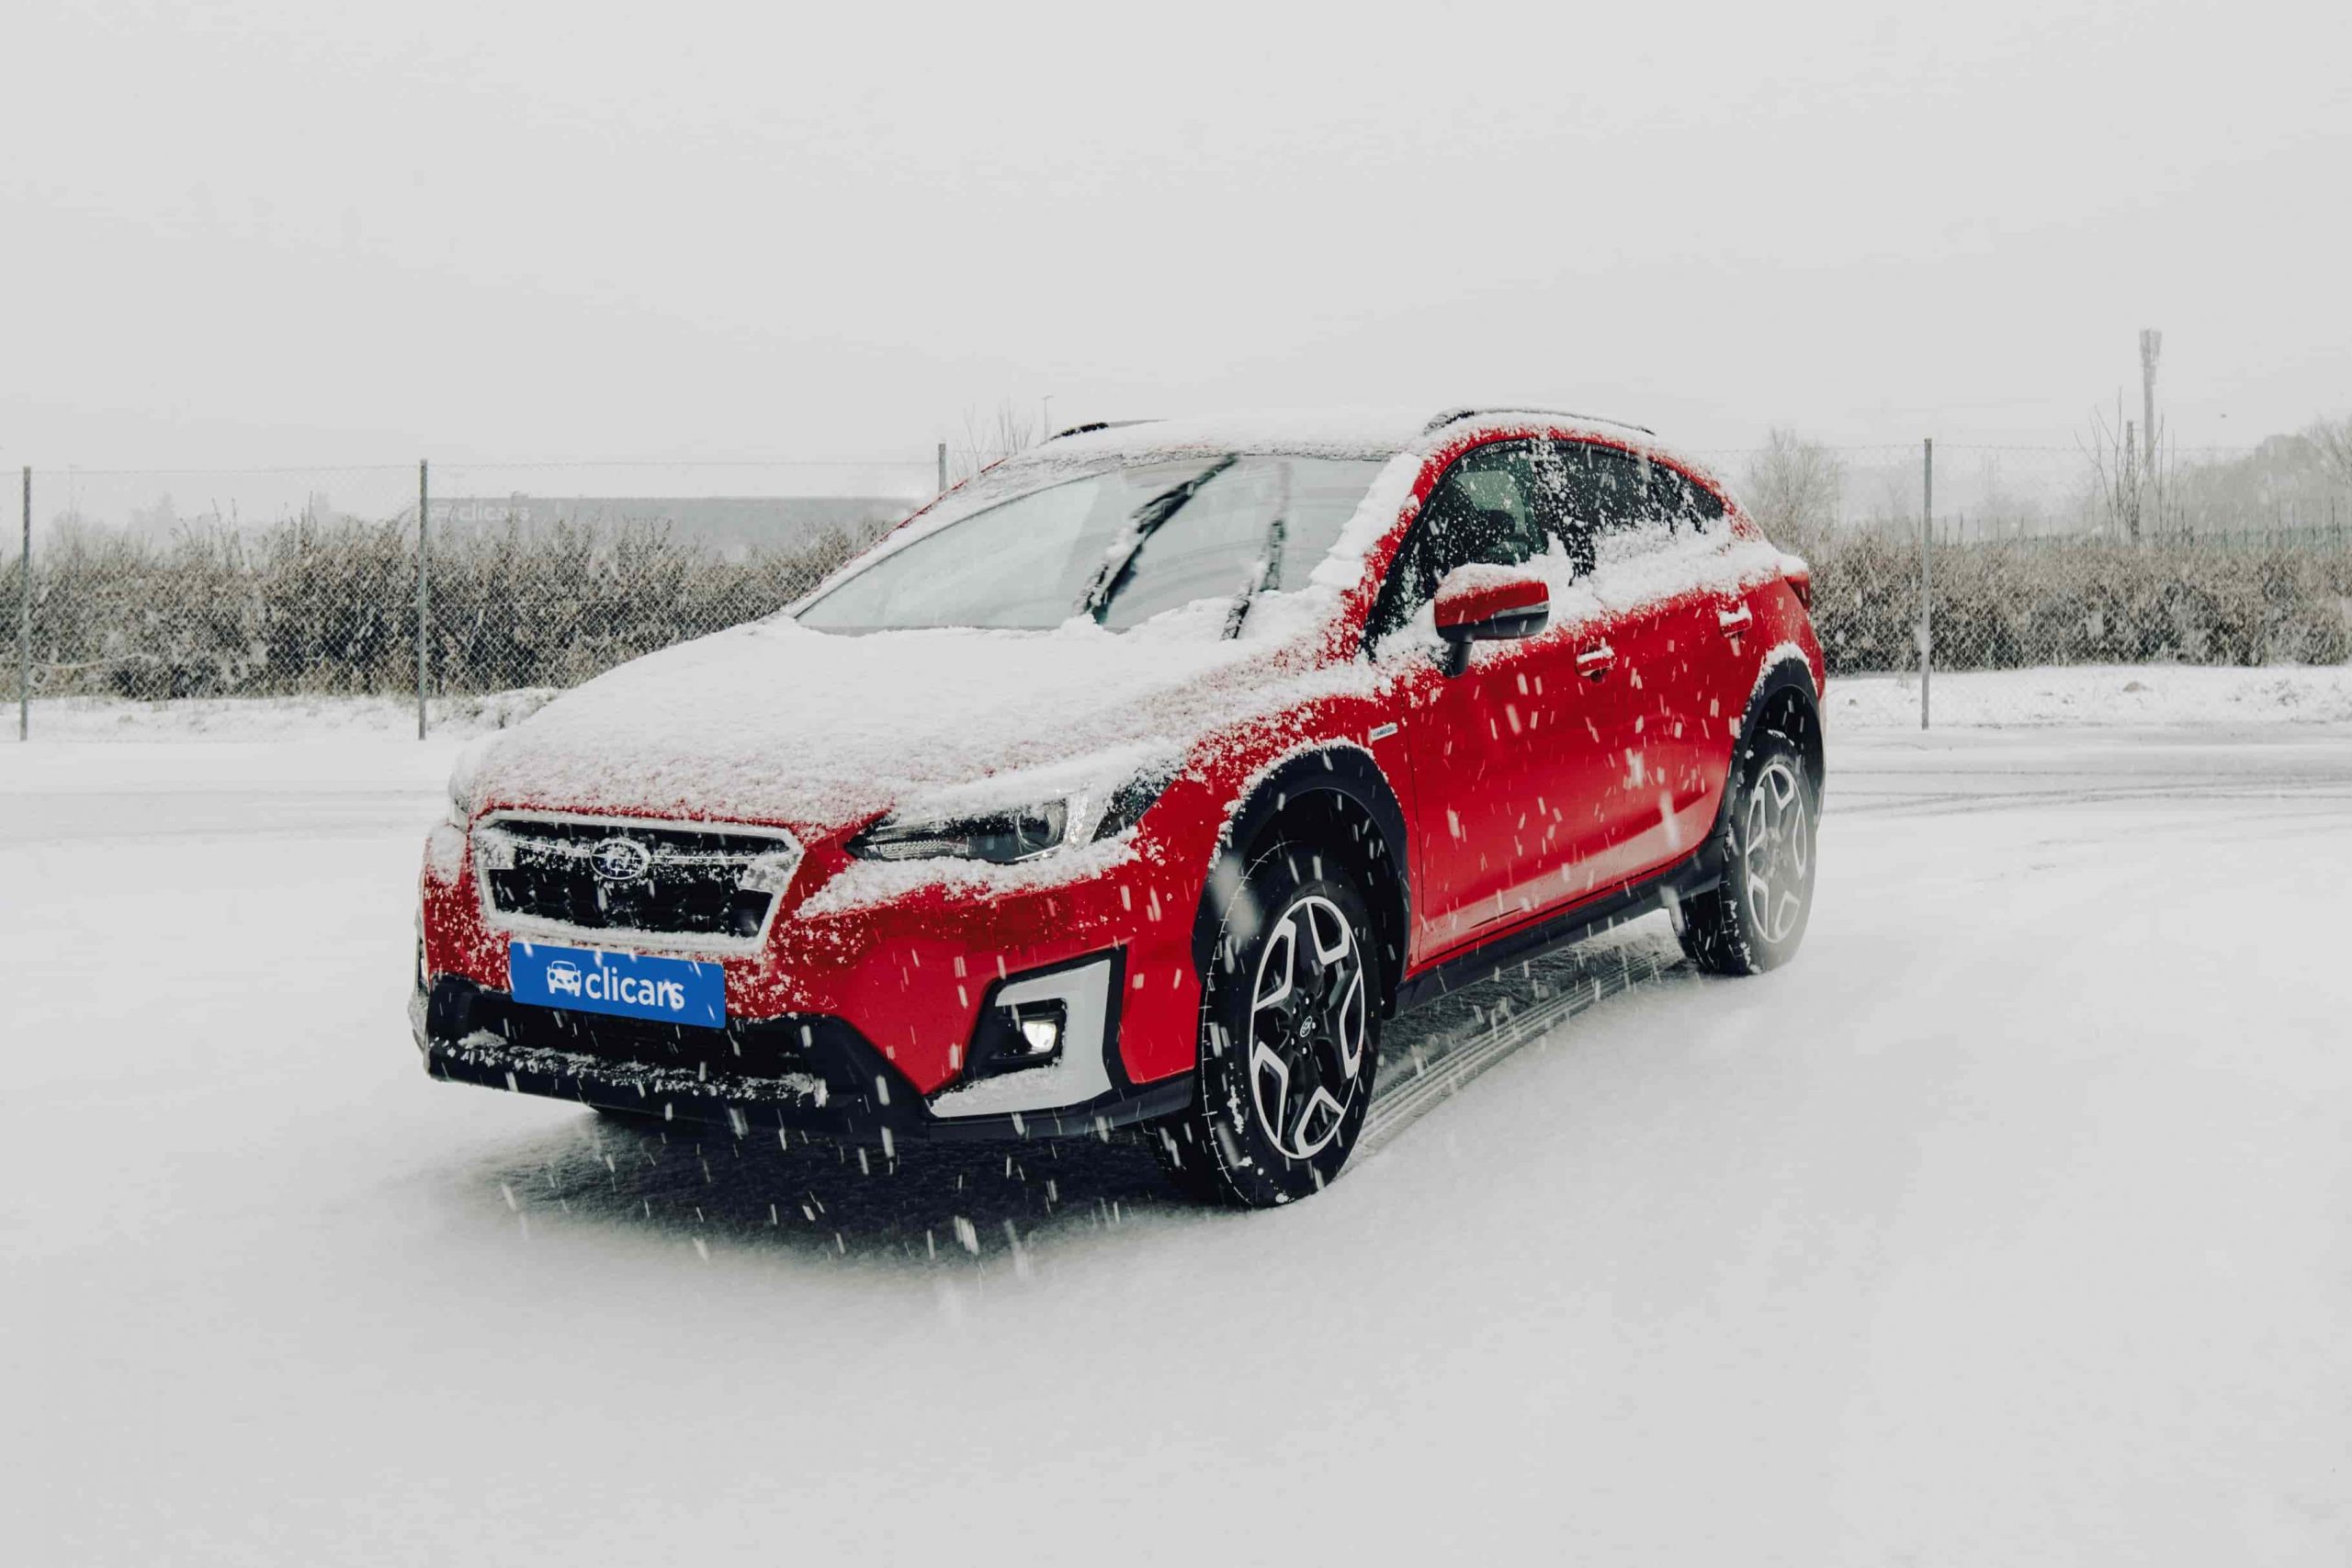 Conducir en nieve: trucos y requisitos para la carretera